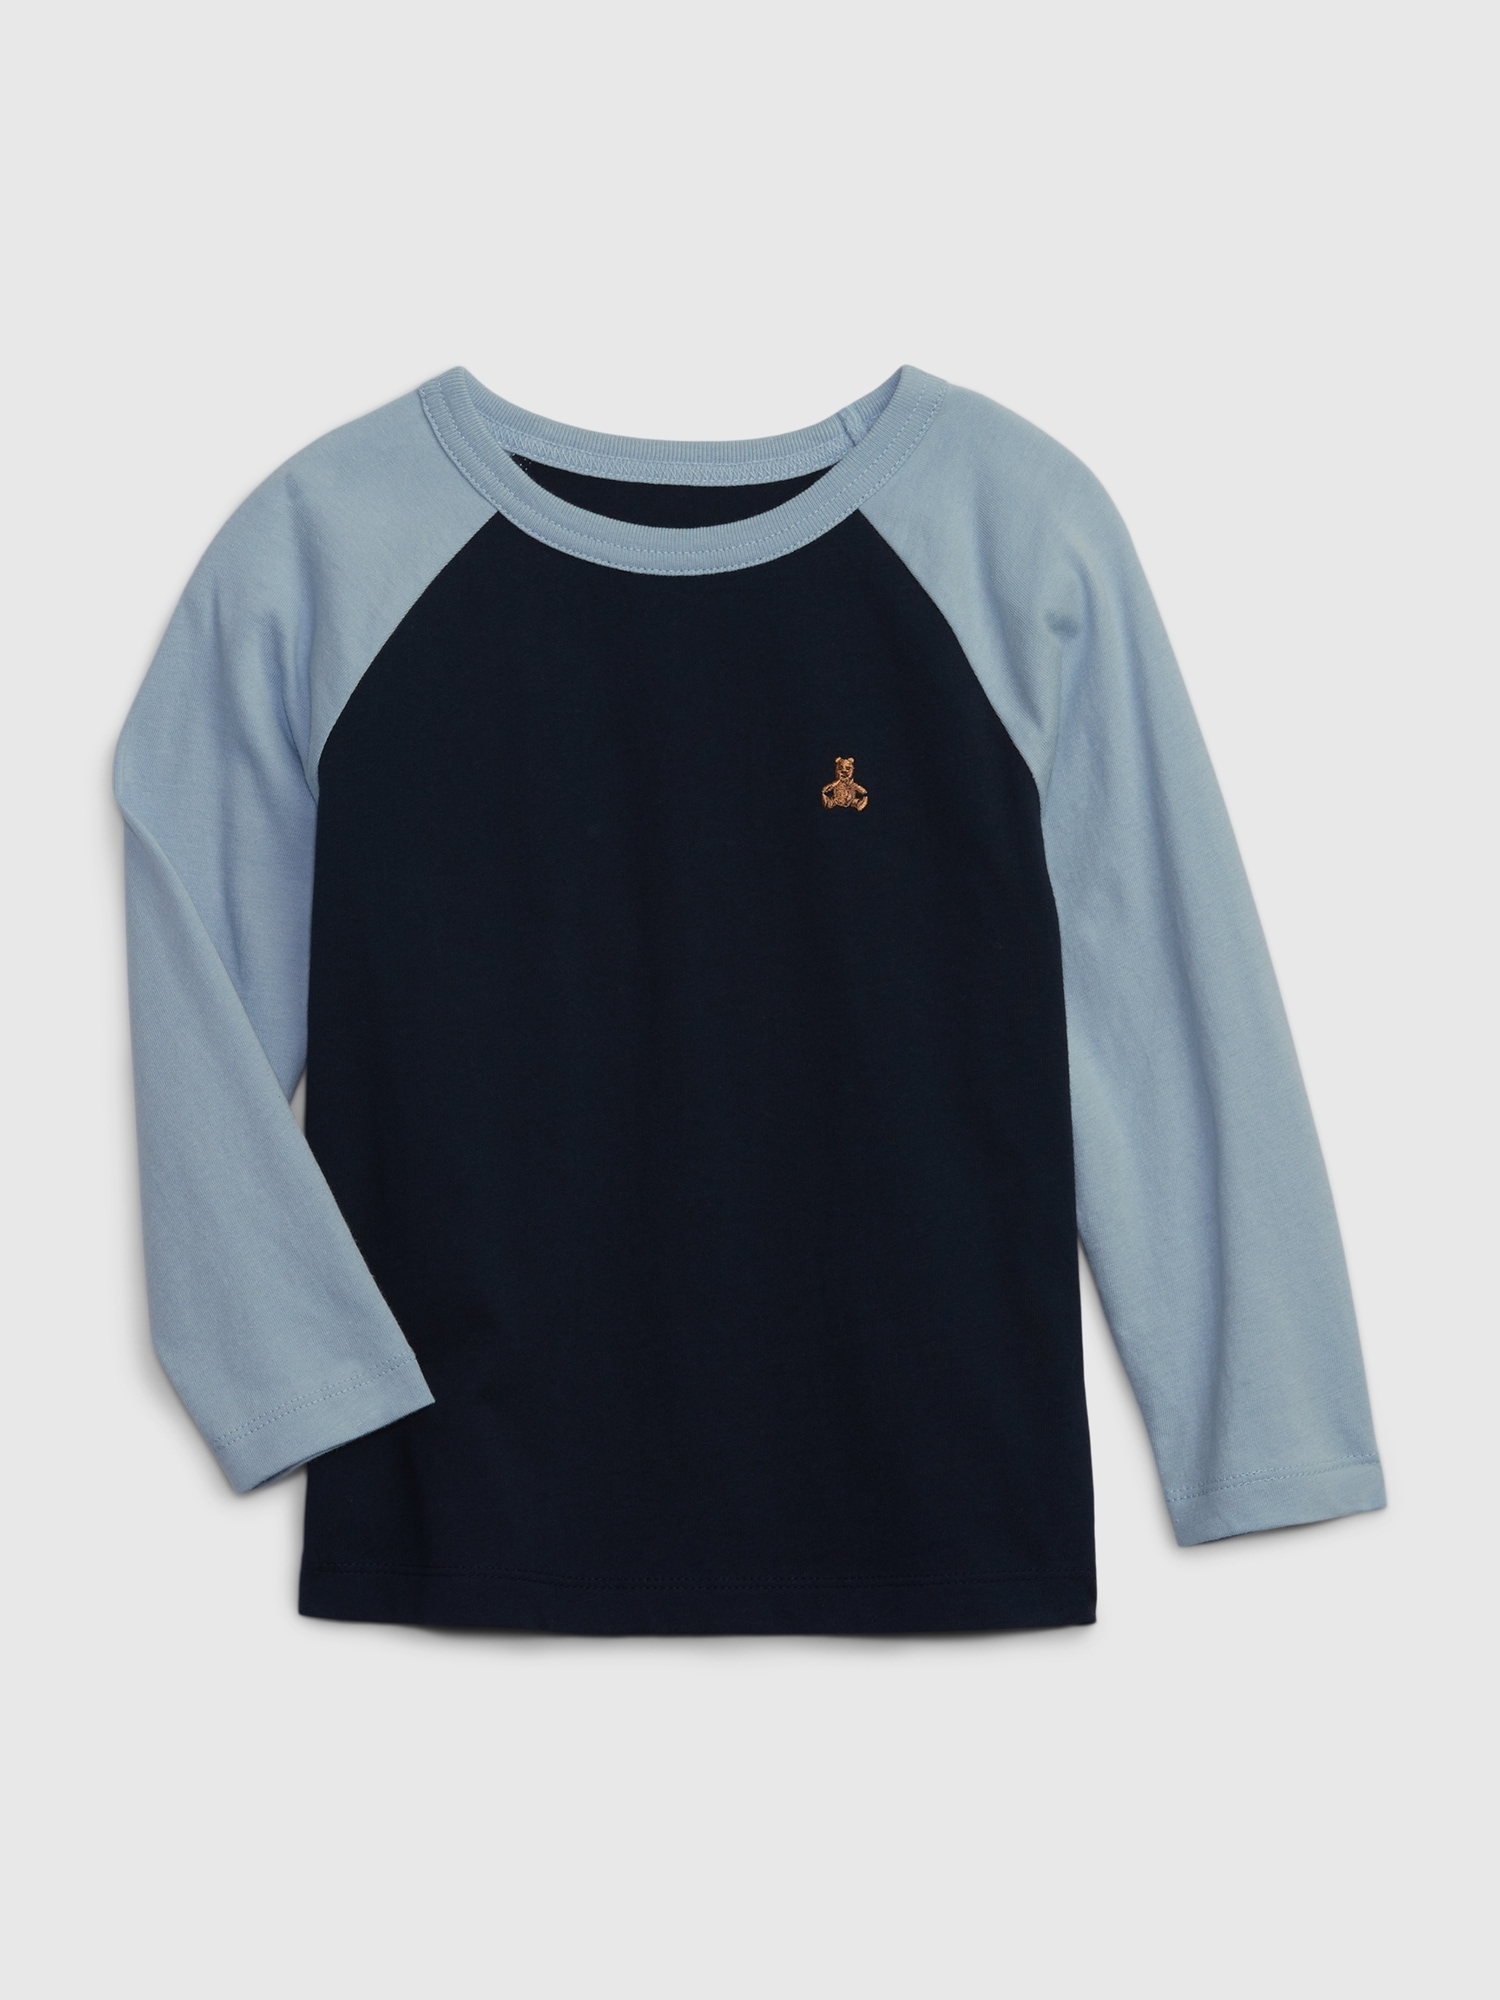 長袖Tシャツ (幼児 80-110cm) | Gap公式オンラインストア